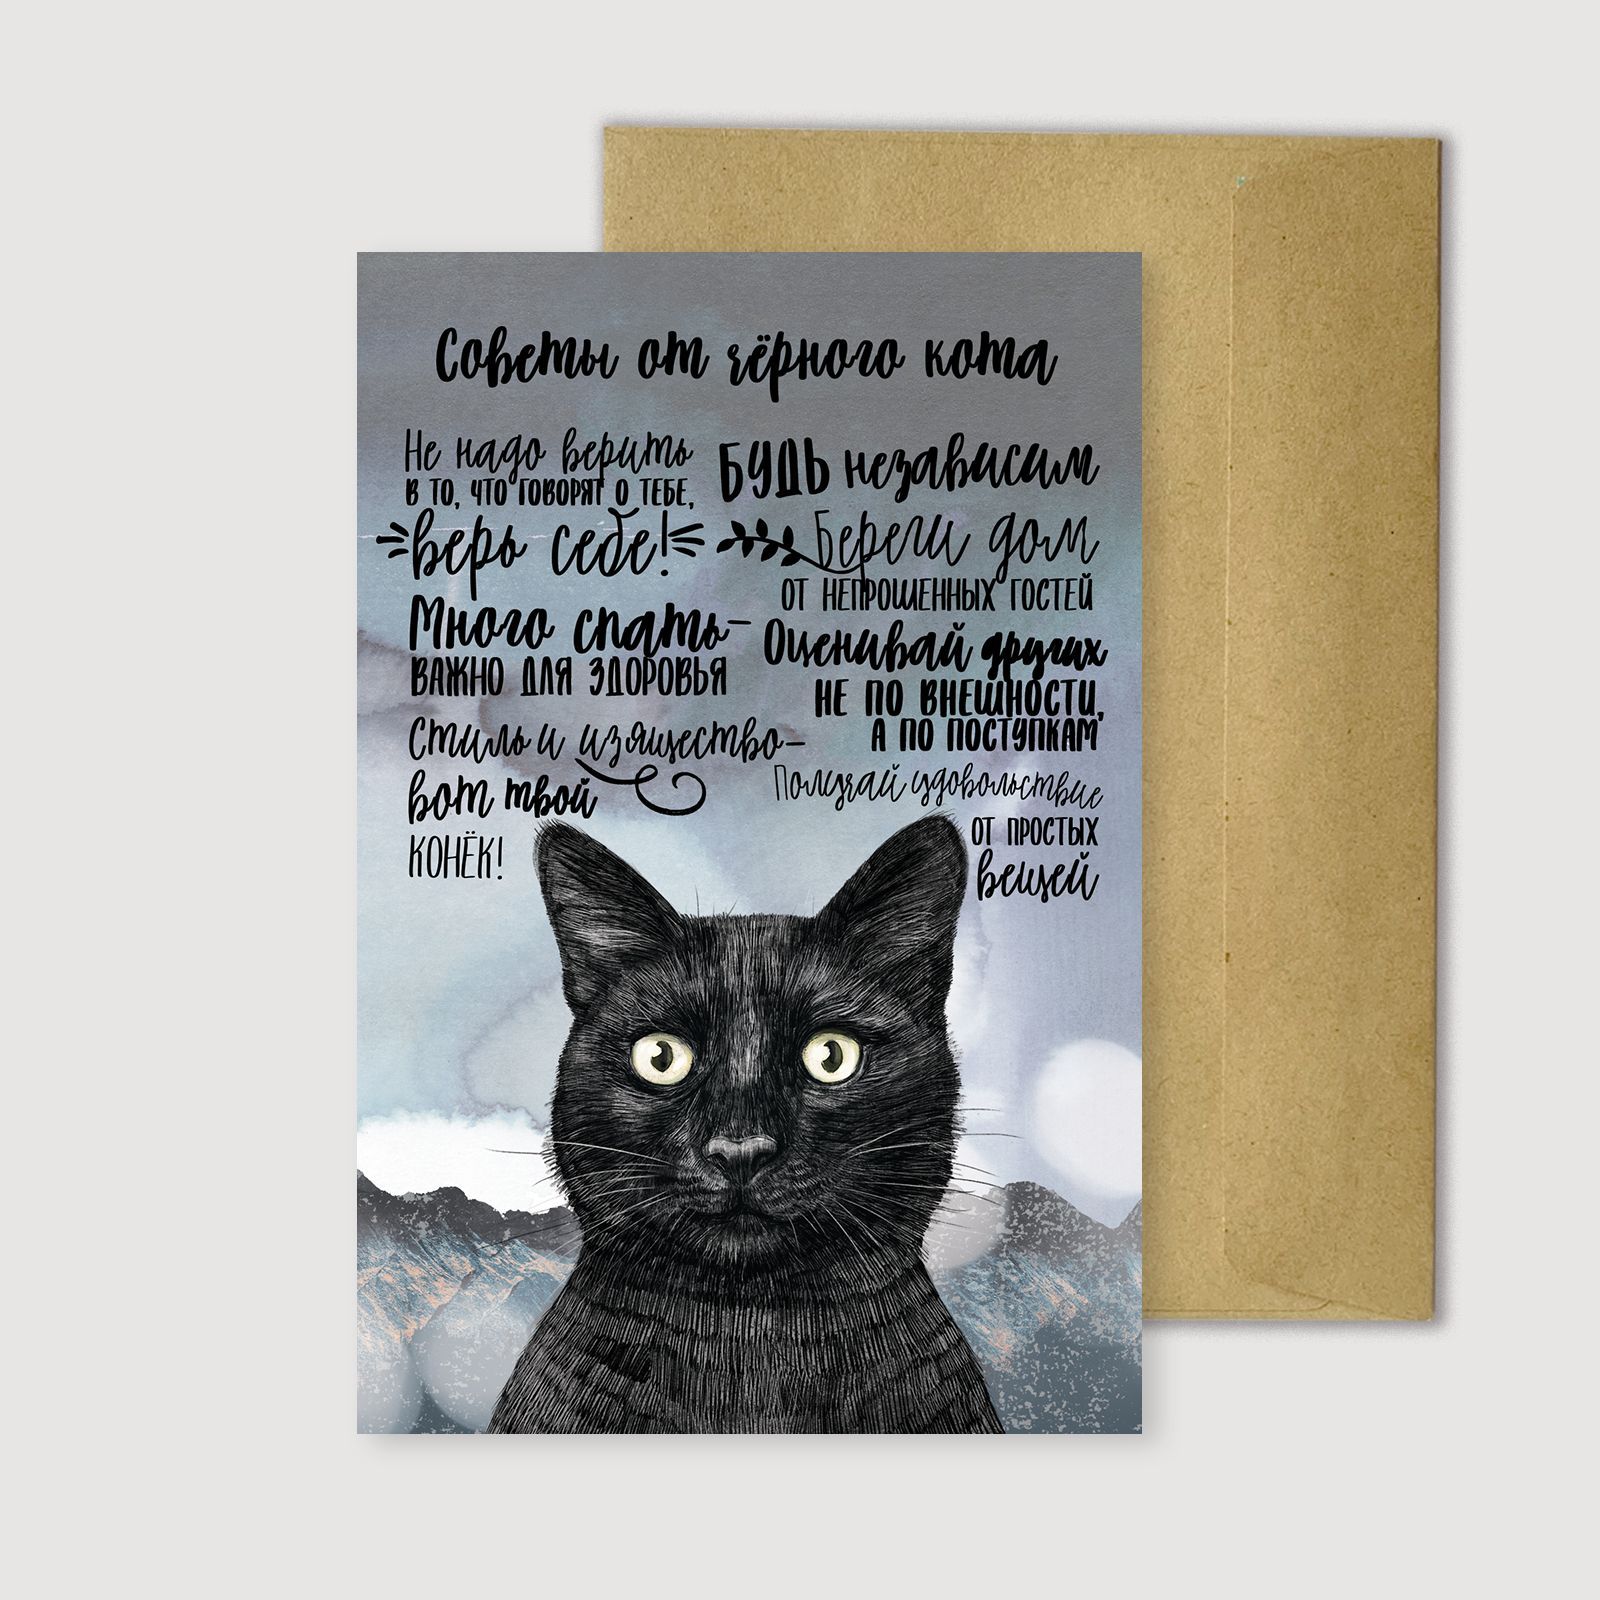 День черной кошки: история праздника